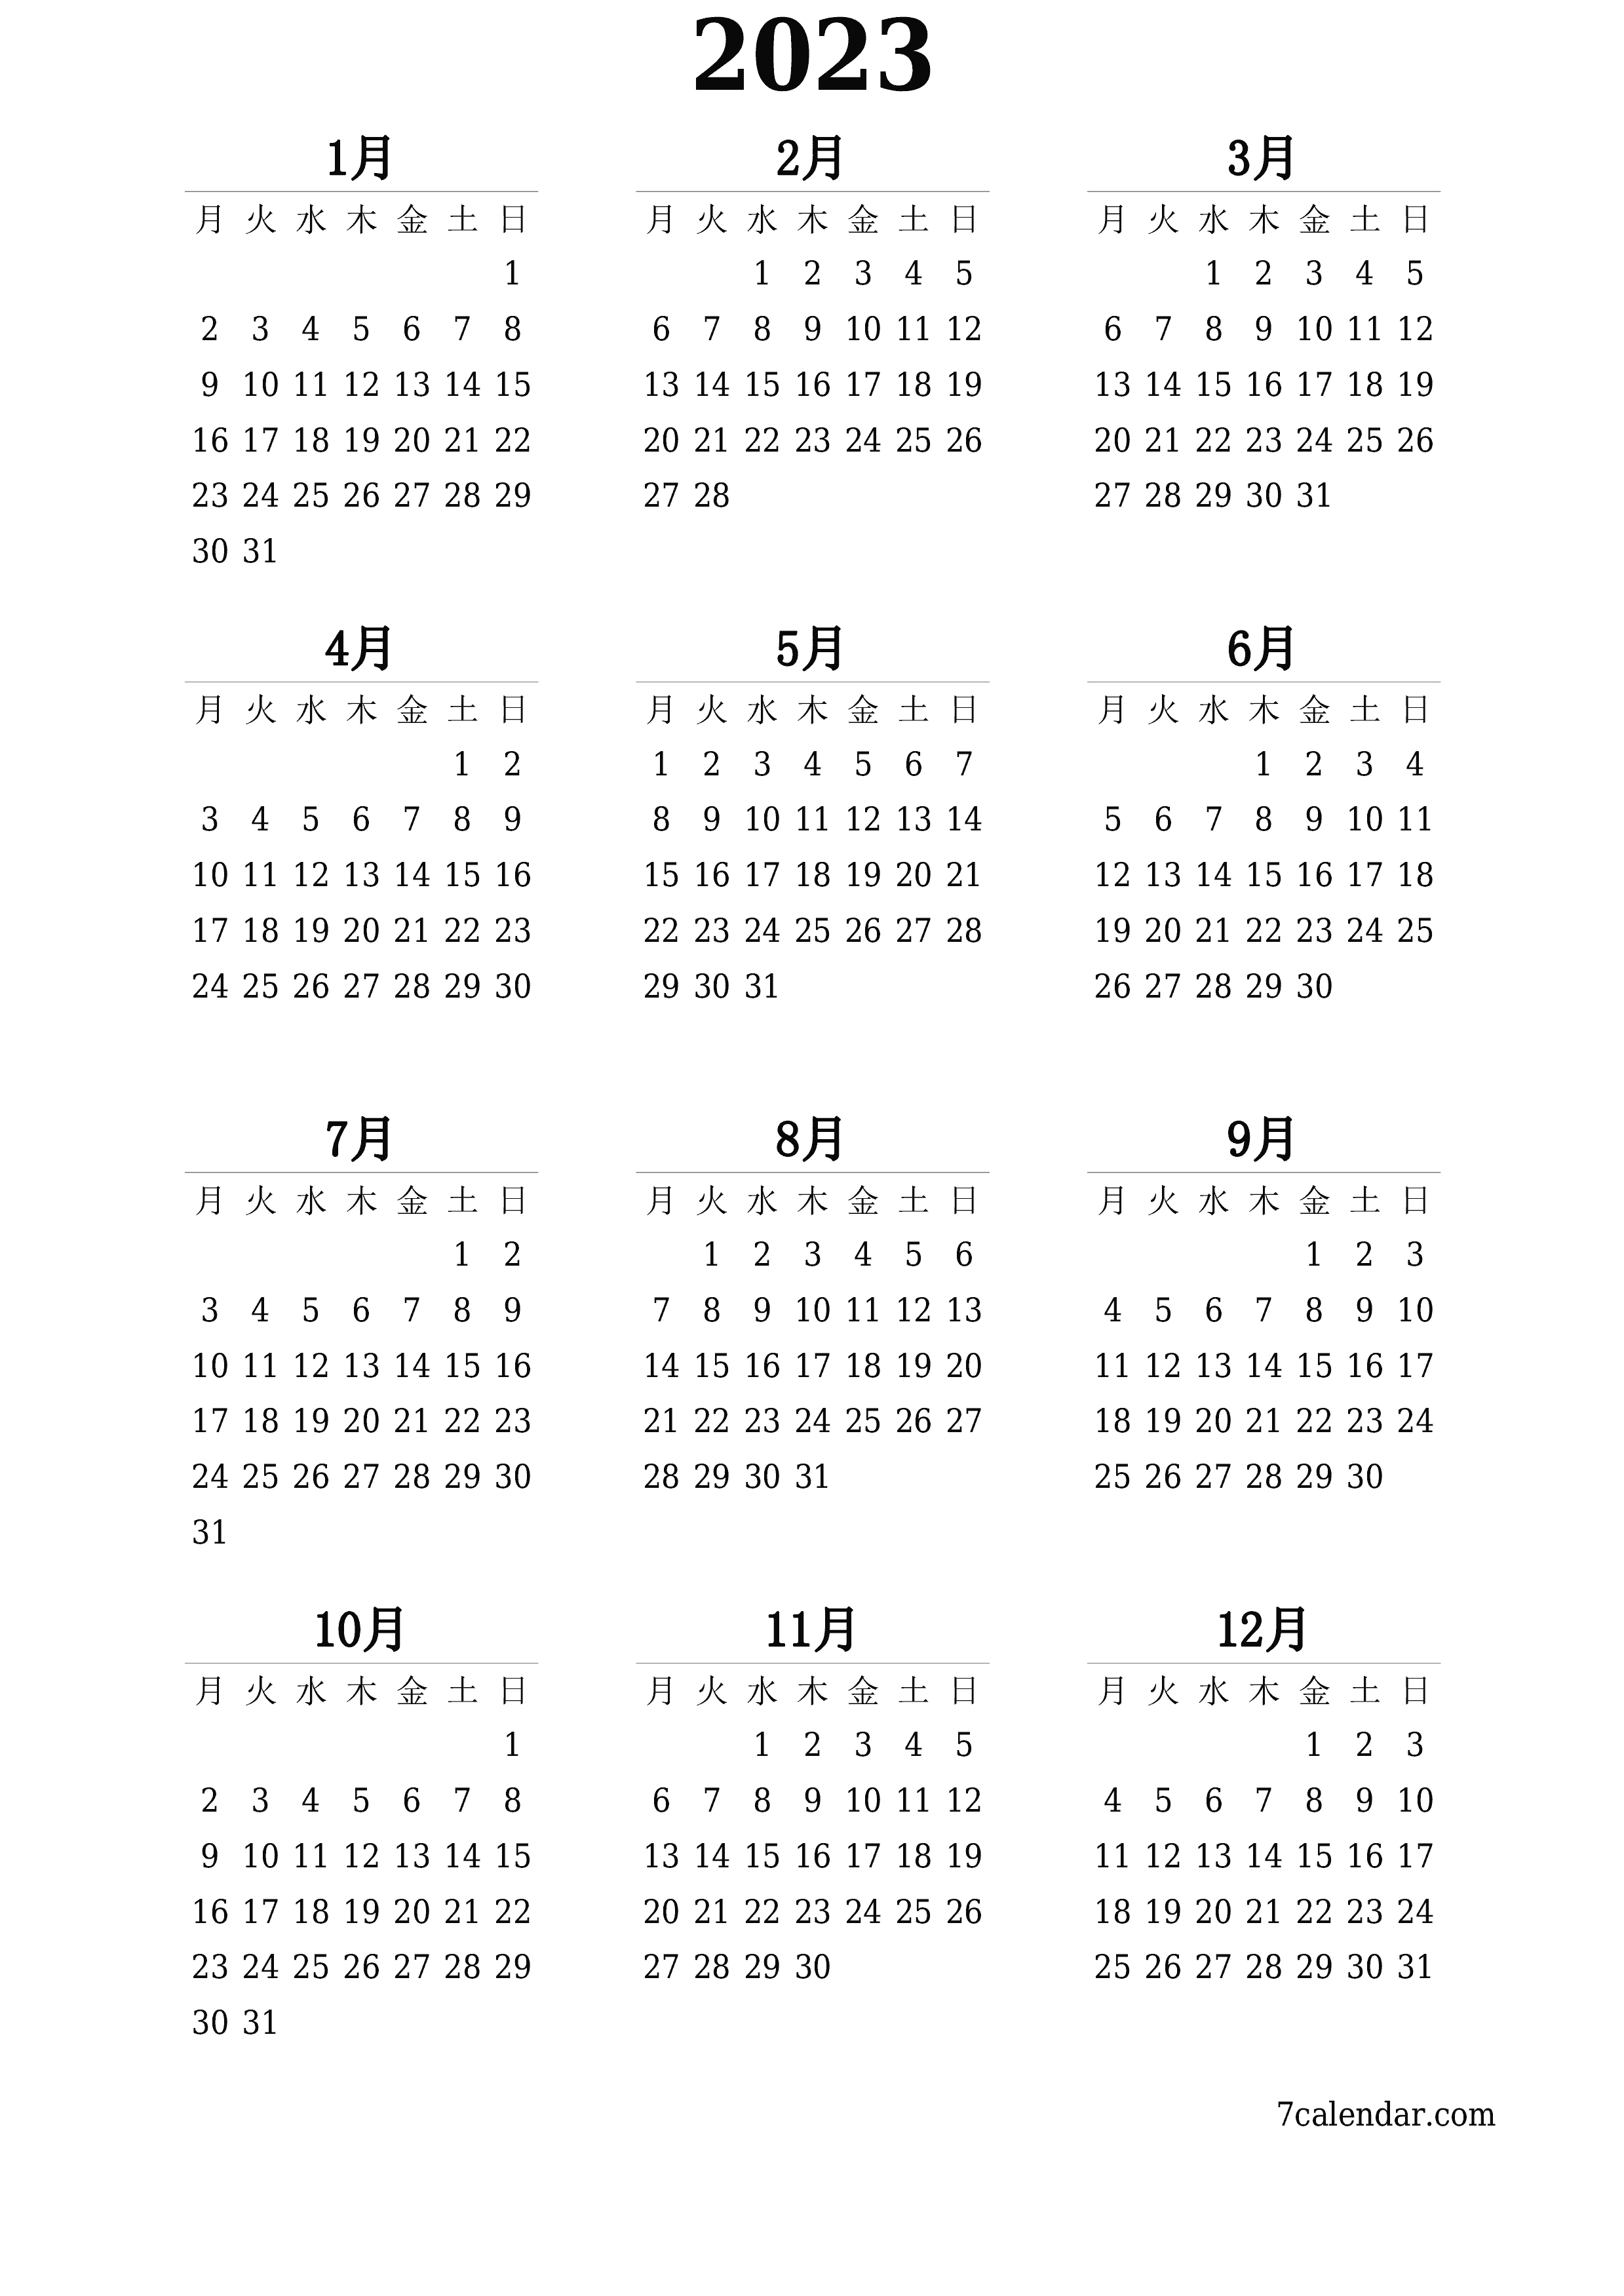 メモ付きの2023年の空の年間プランナーカレンダー、保存してPDFに印刷PNG Japanese